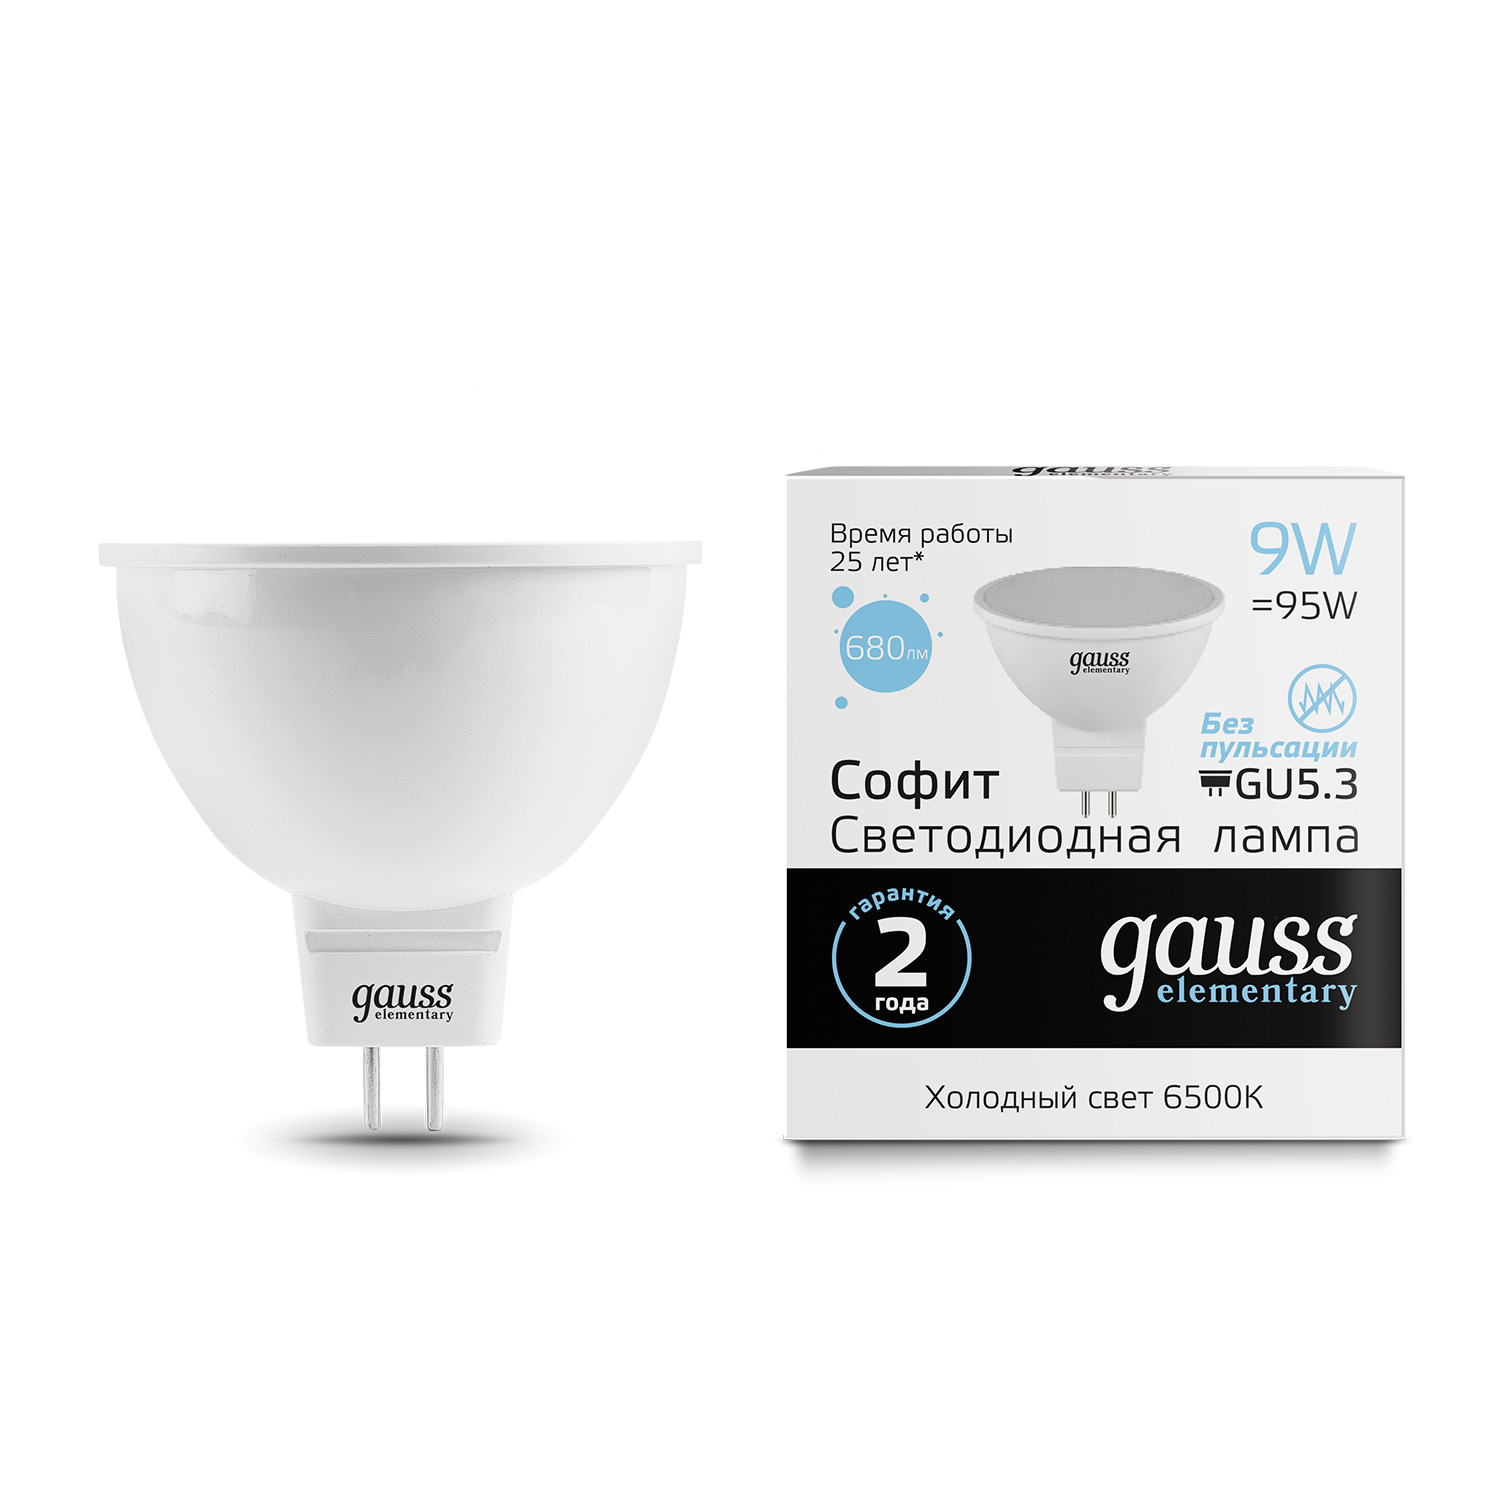 Лампа Gauss LED Elementary MR16 GU5.3 9W 6500K лампочка gauss 13526 elementary mr16